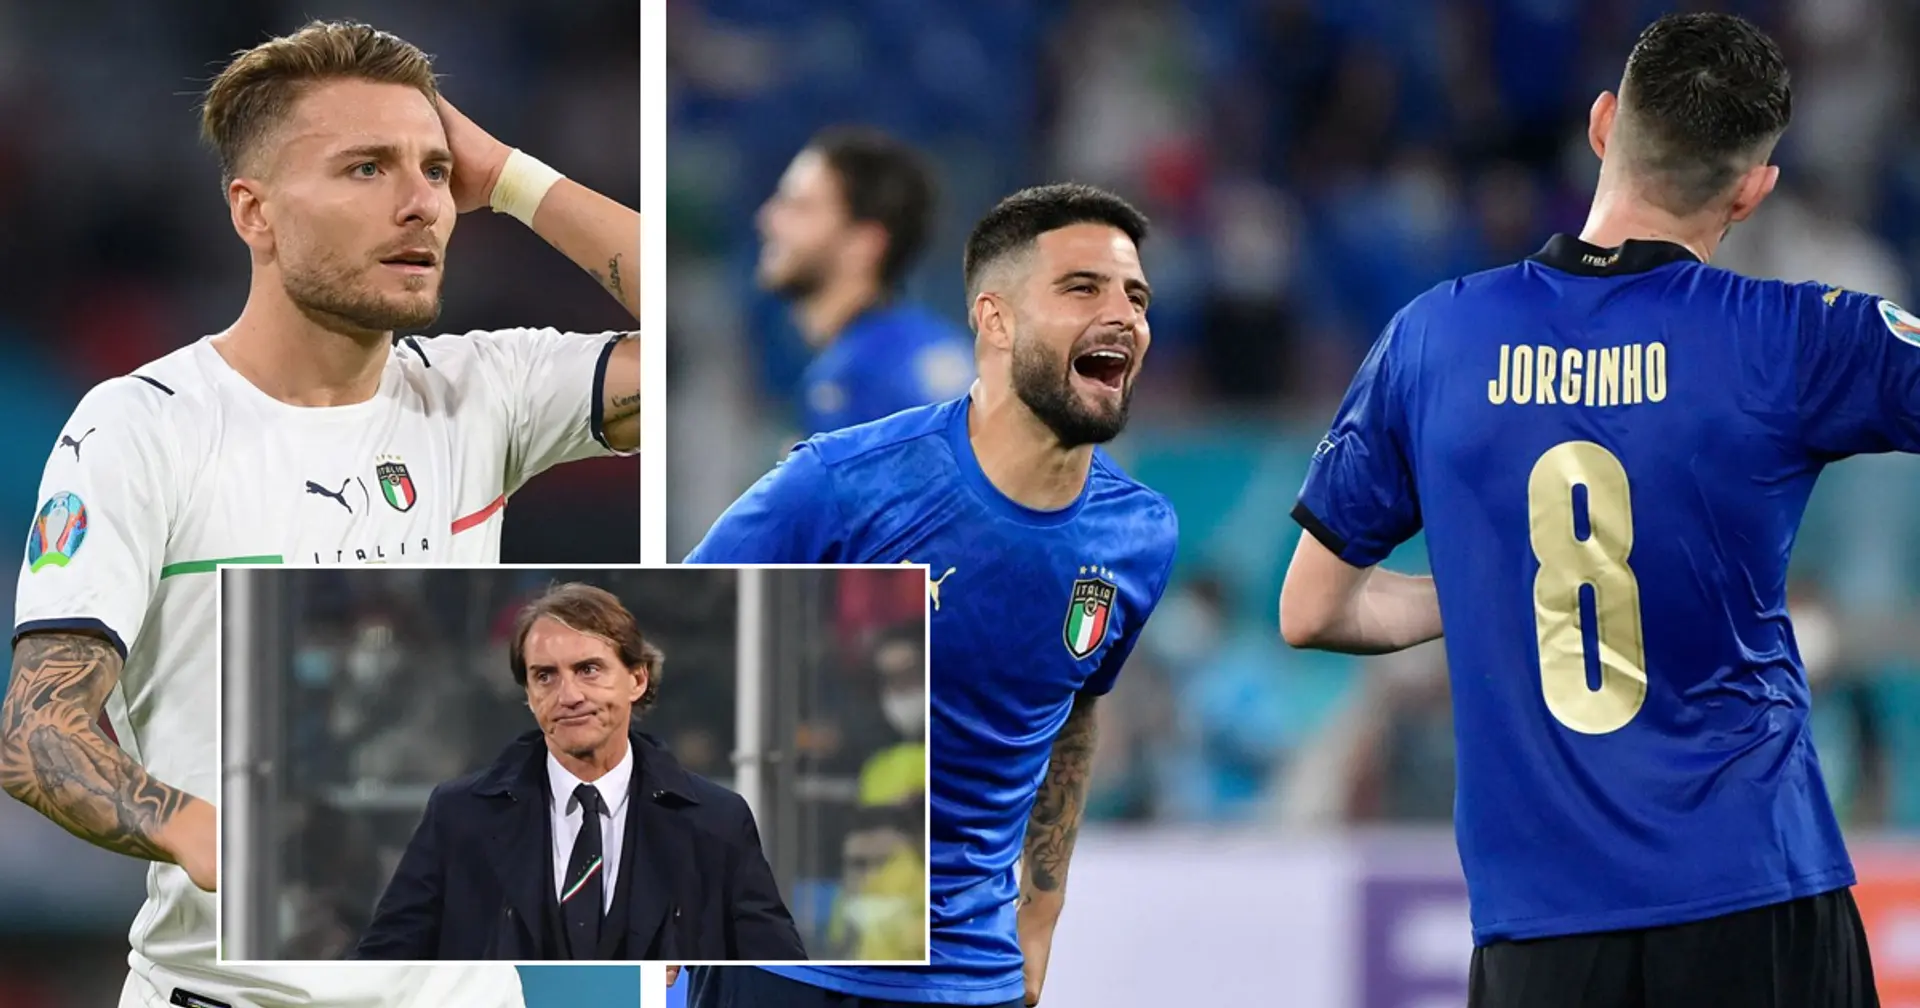 Bericht: Insigne, Immobile und Jorginho sollen Rücktritt vom italienischen Nationalteam erwägen